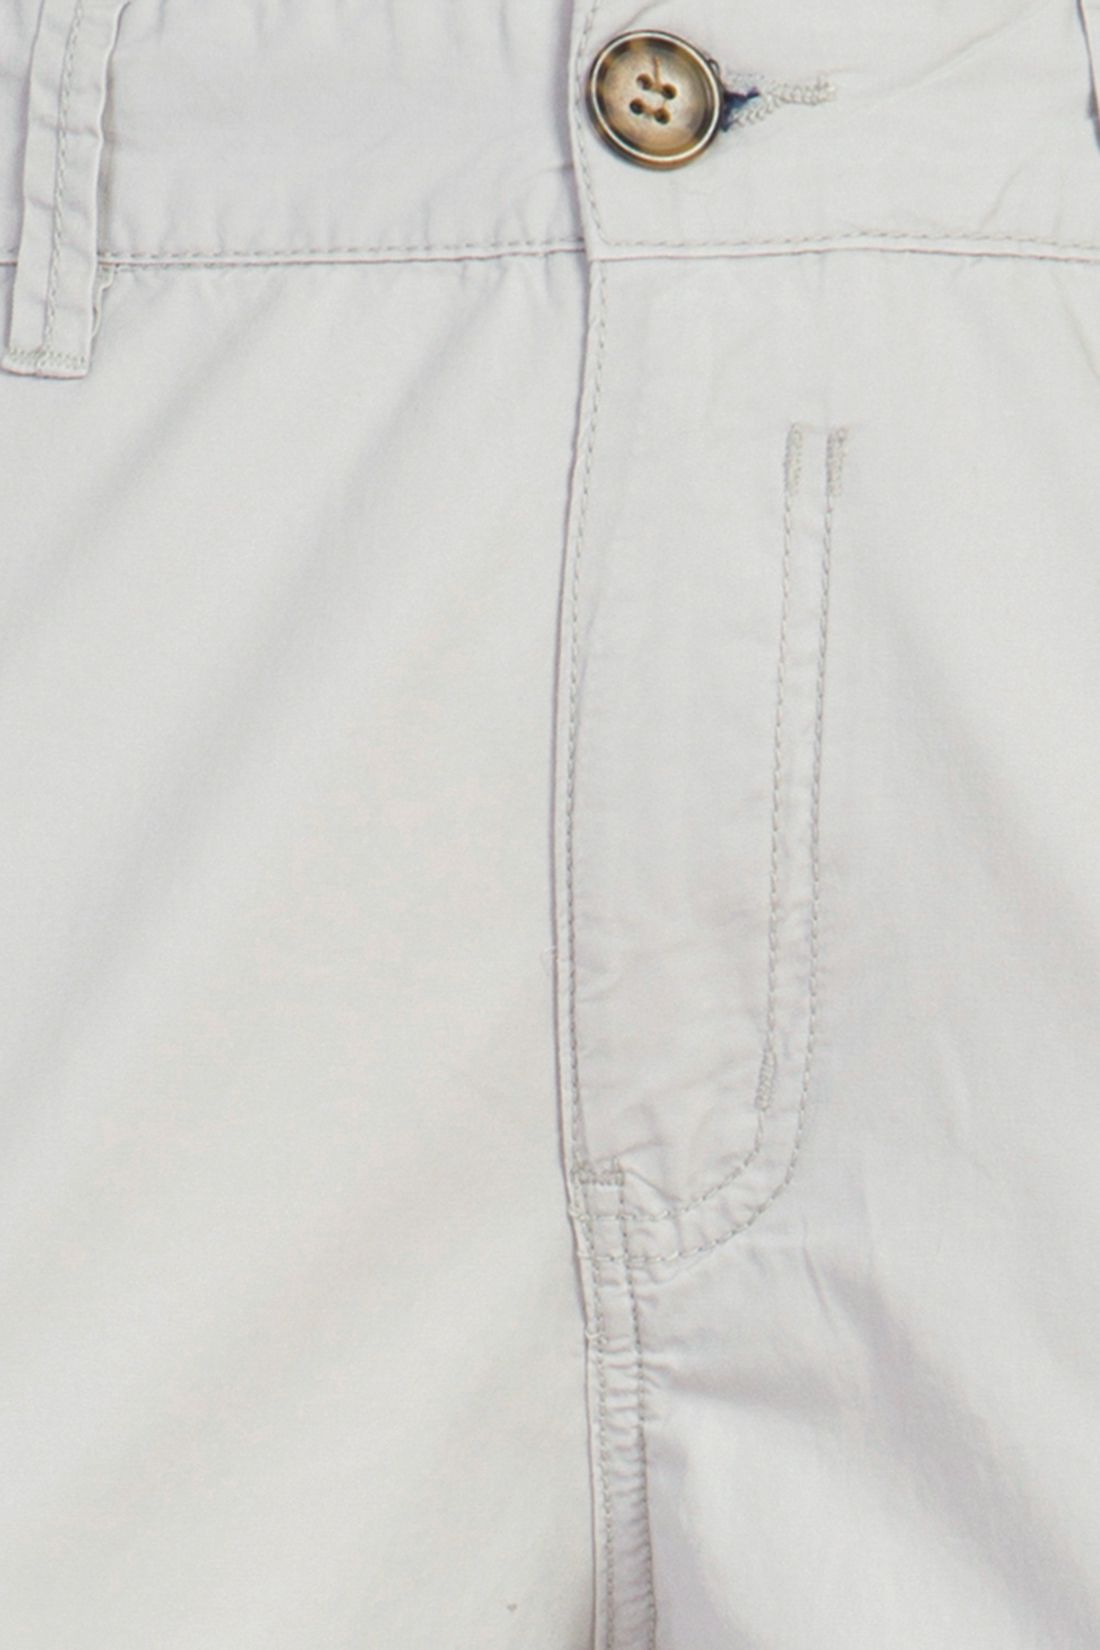 Хлопковые брюки-чиносы (арт. baon B797010), размер 3XL, цвет белый Хлопковые брюки-чиносы (арт. baon B797010) - фото 3